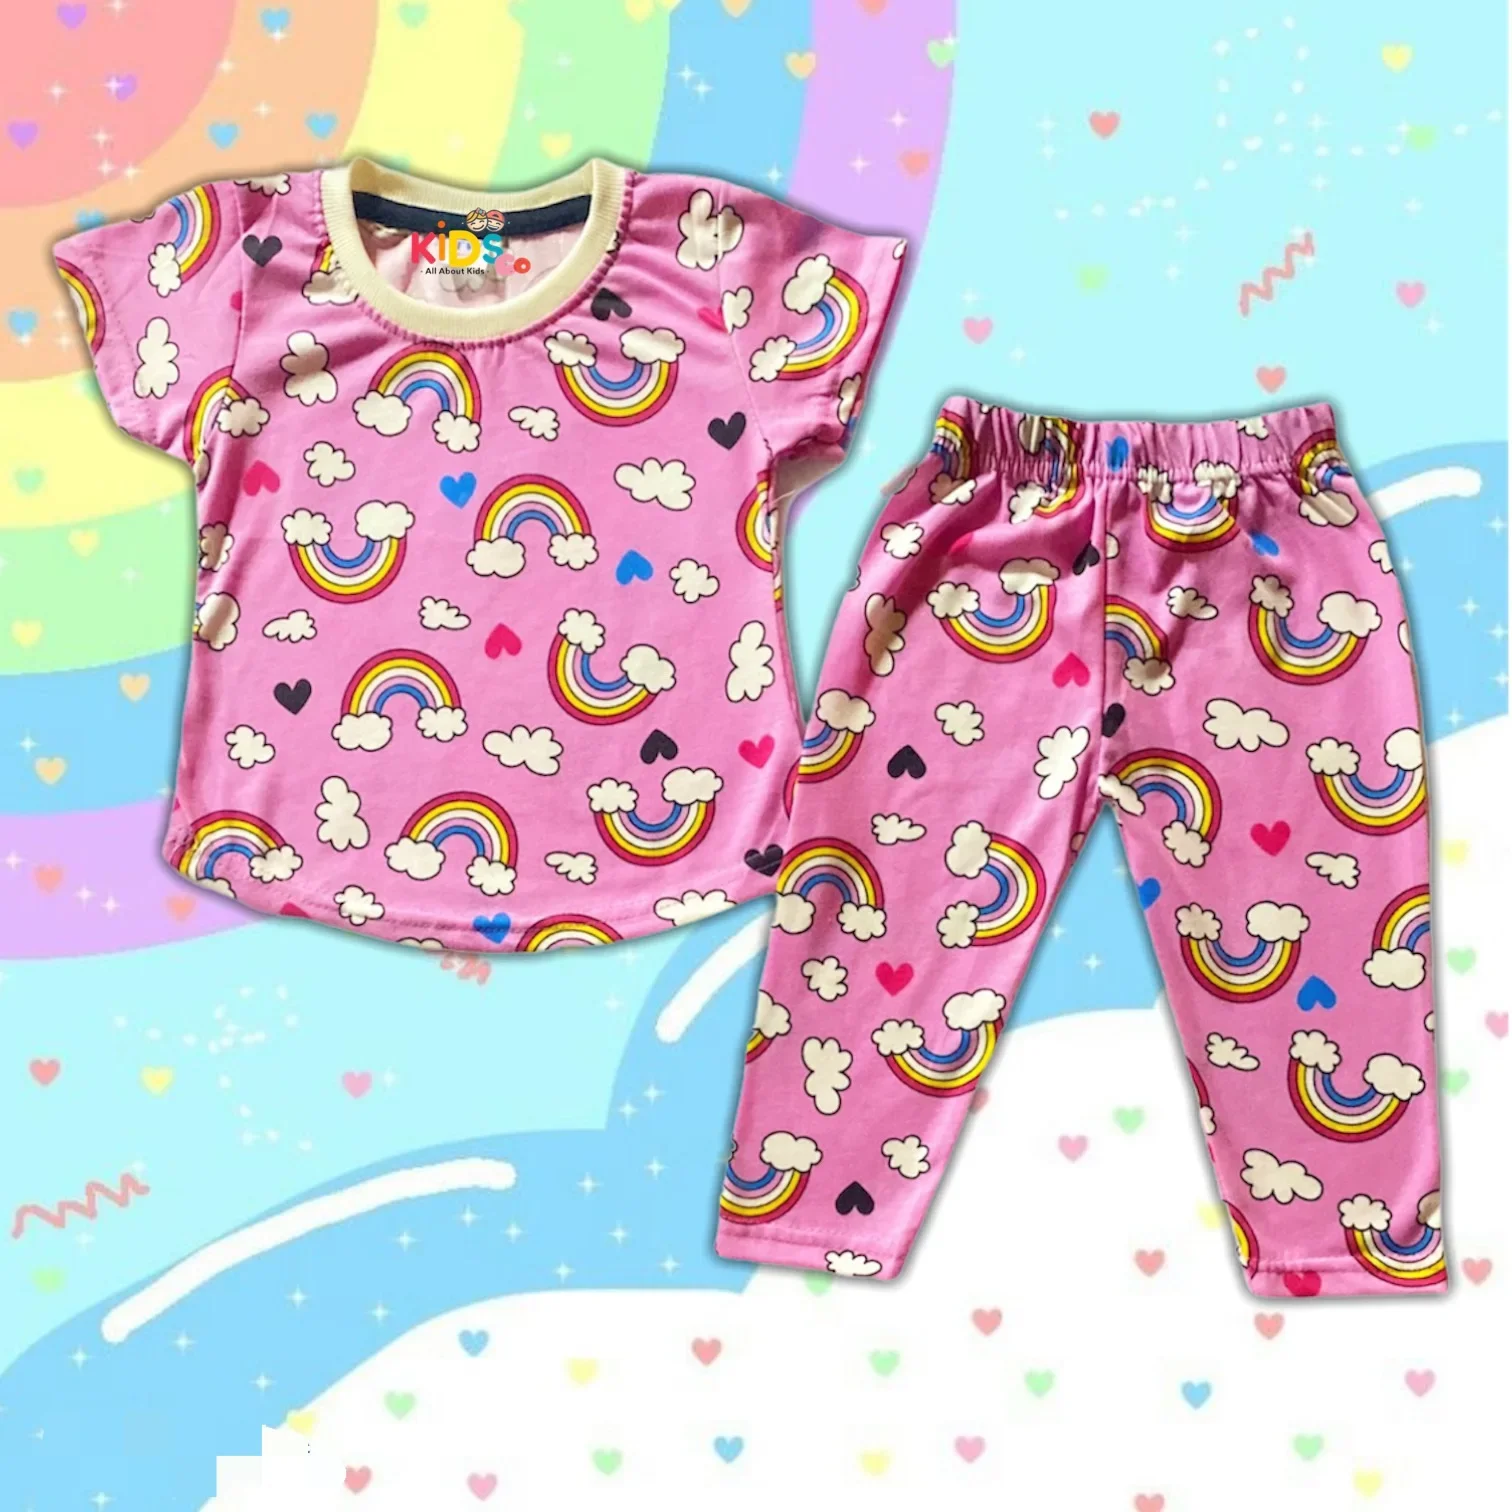 Pyjamas Pink Rainbow Printed Cotton Kids Size